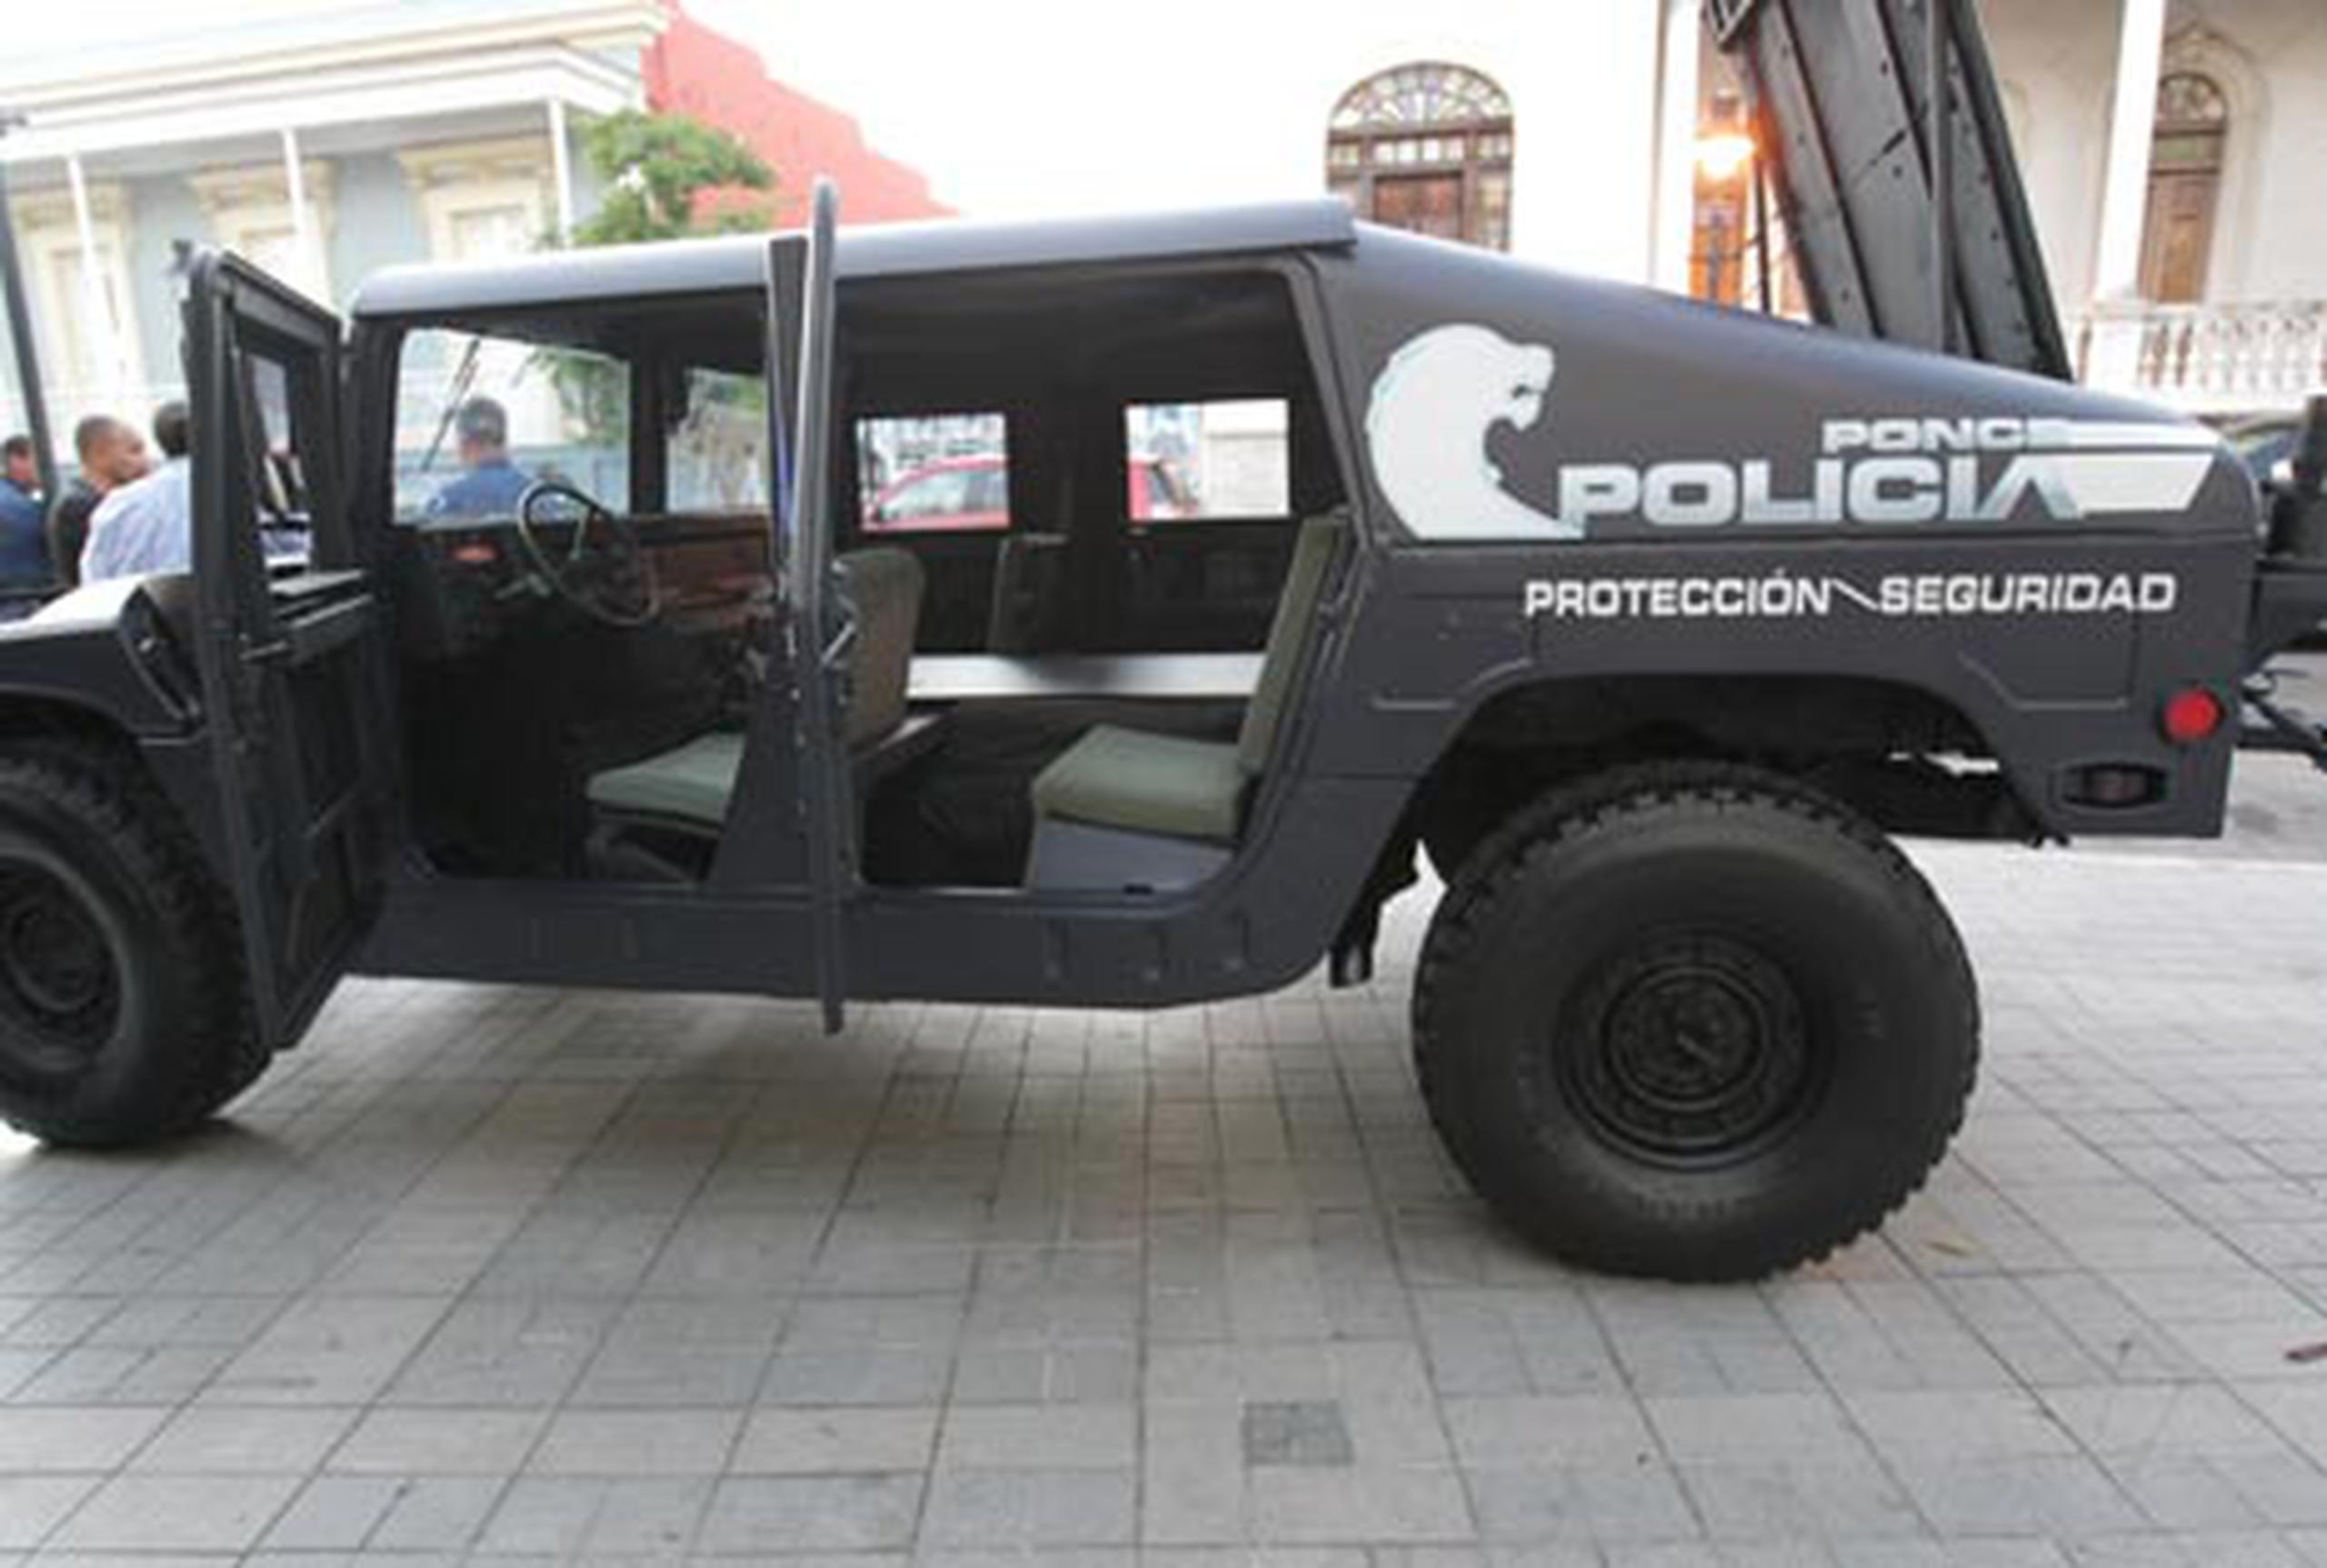 La Policía Municipal de Ponce contará con 10 vehículos militares modelos HMMWV y un camión tractor para patrullaje preventivo y movilización en situaciones de emergencia. (Suministrada)